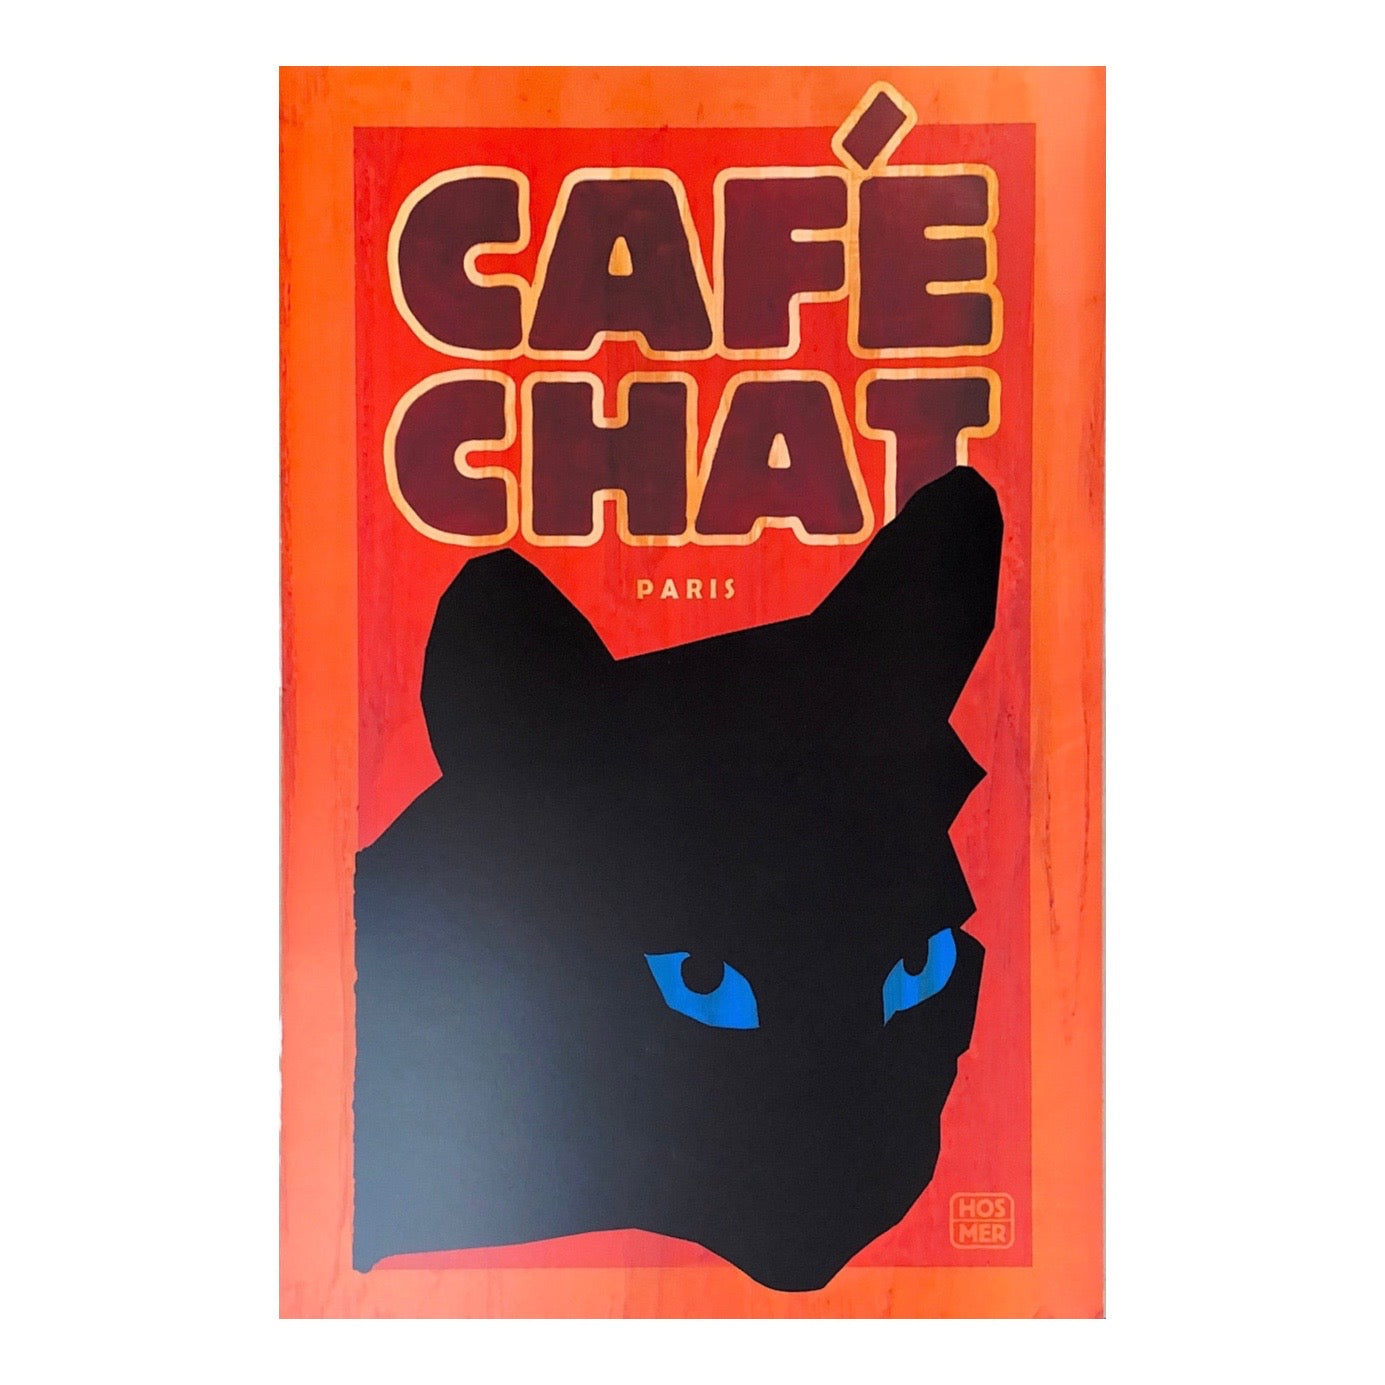 Cafe Chat Paris graphic print